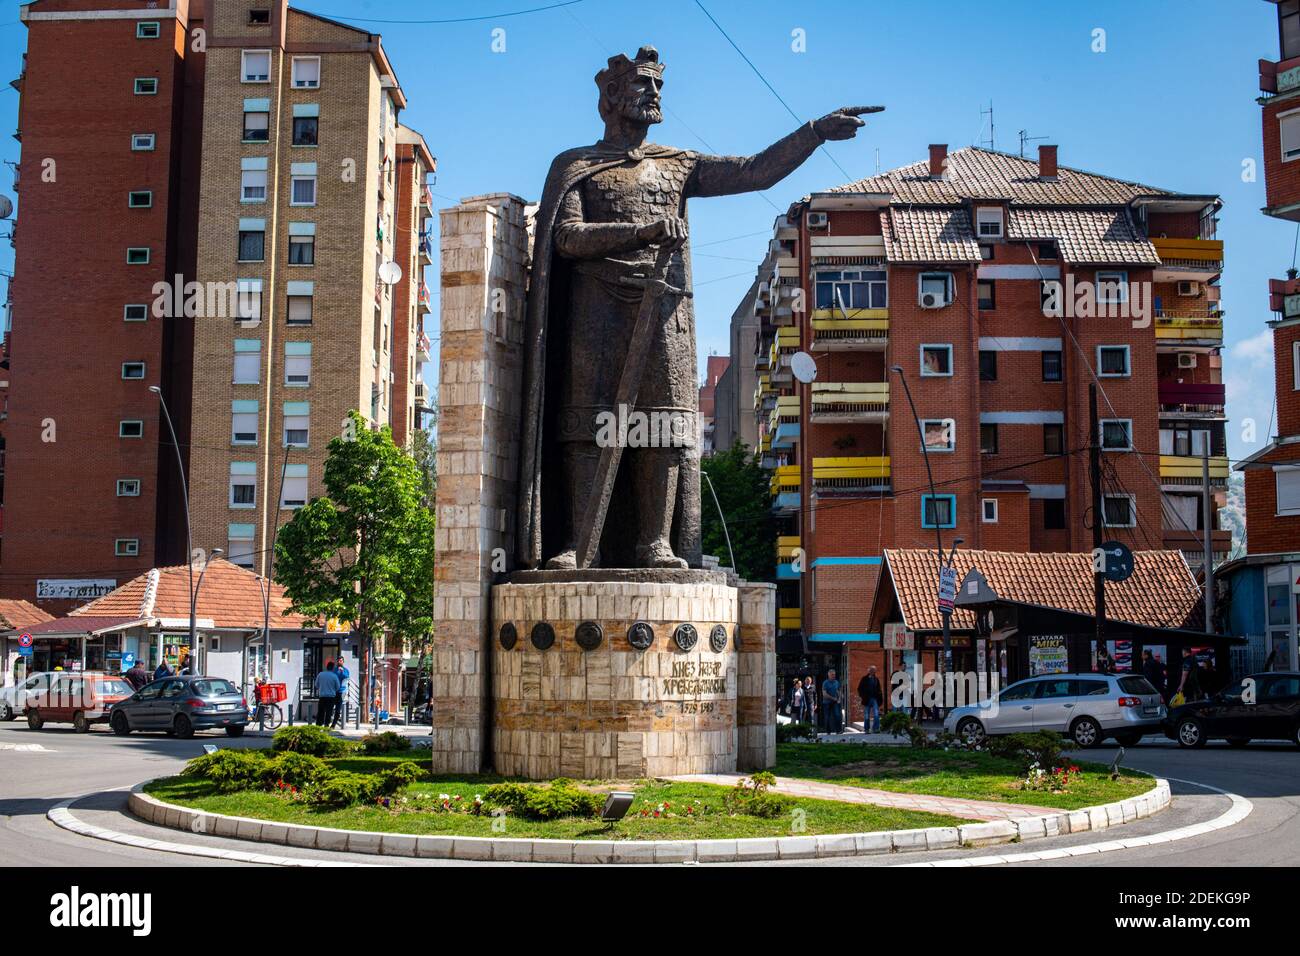 Kosovska Mitrovica, 17 mai 2019. À l'époque de Tito, c'était une grande cité industrielle, dont l'essor reposait sur les mines de lignite de TrepÄa. Aujourd'hui, la ville est divisée en deux: serbes au nord, albanais au sud. Statue du Prince Lazar HrebeljanoviÄ‡, au Nord de la ville. Donation de la Serbie en 2016. Stock Photo